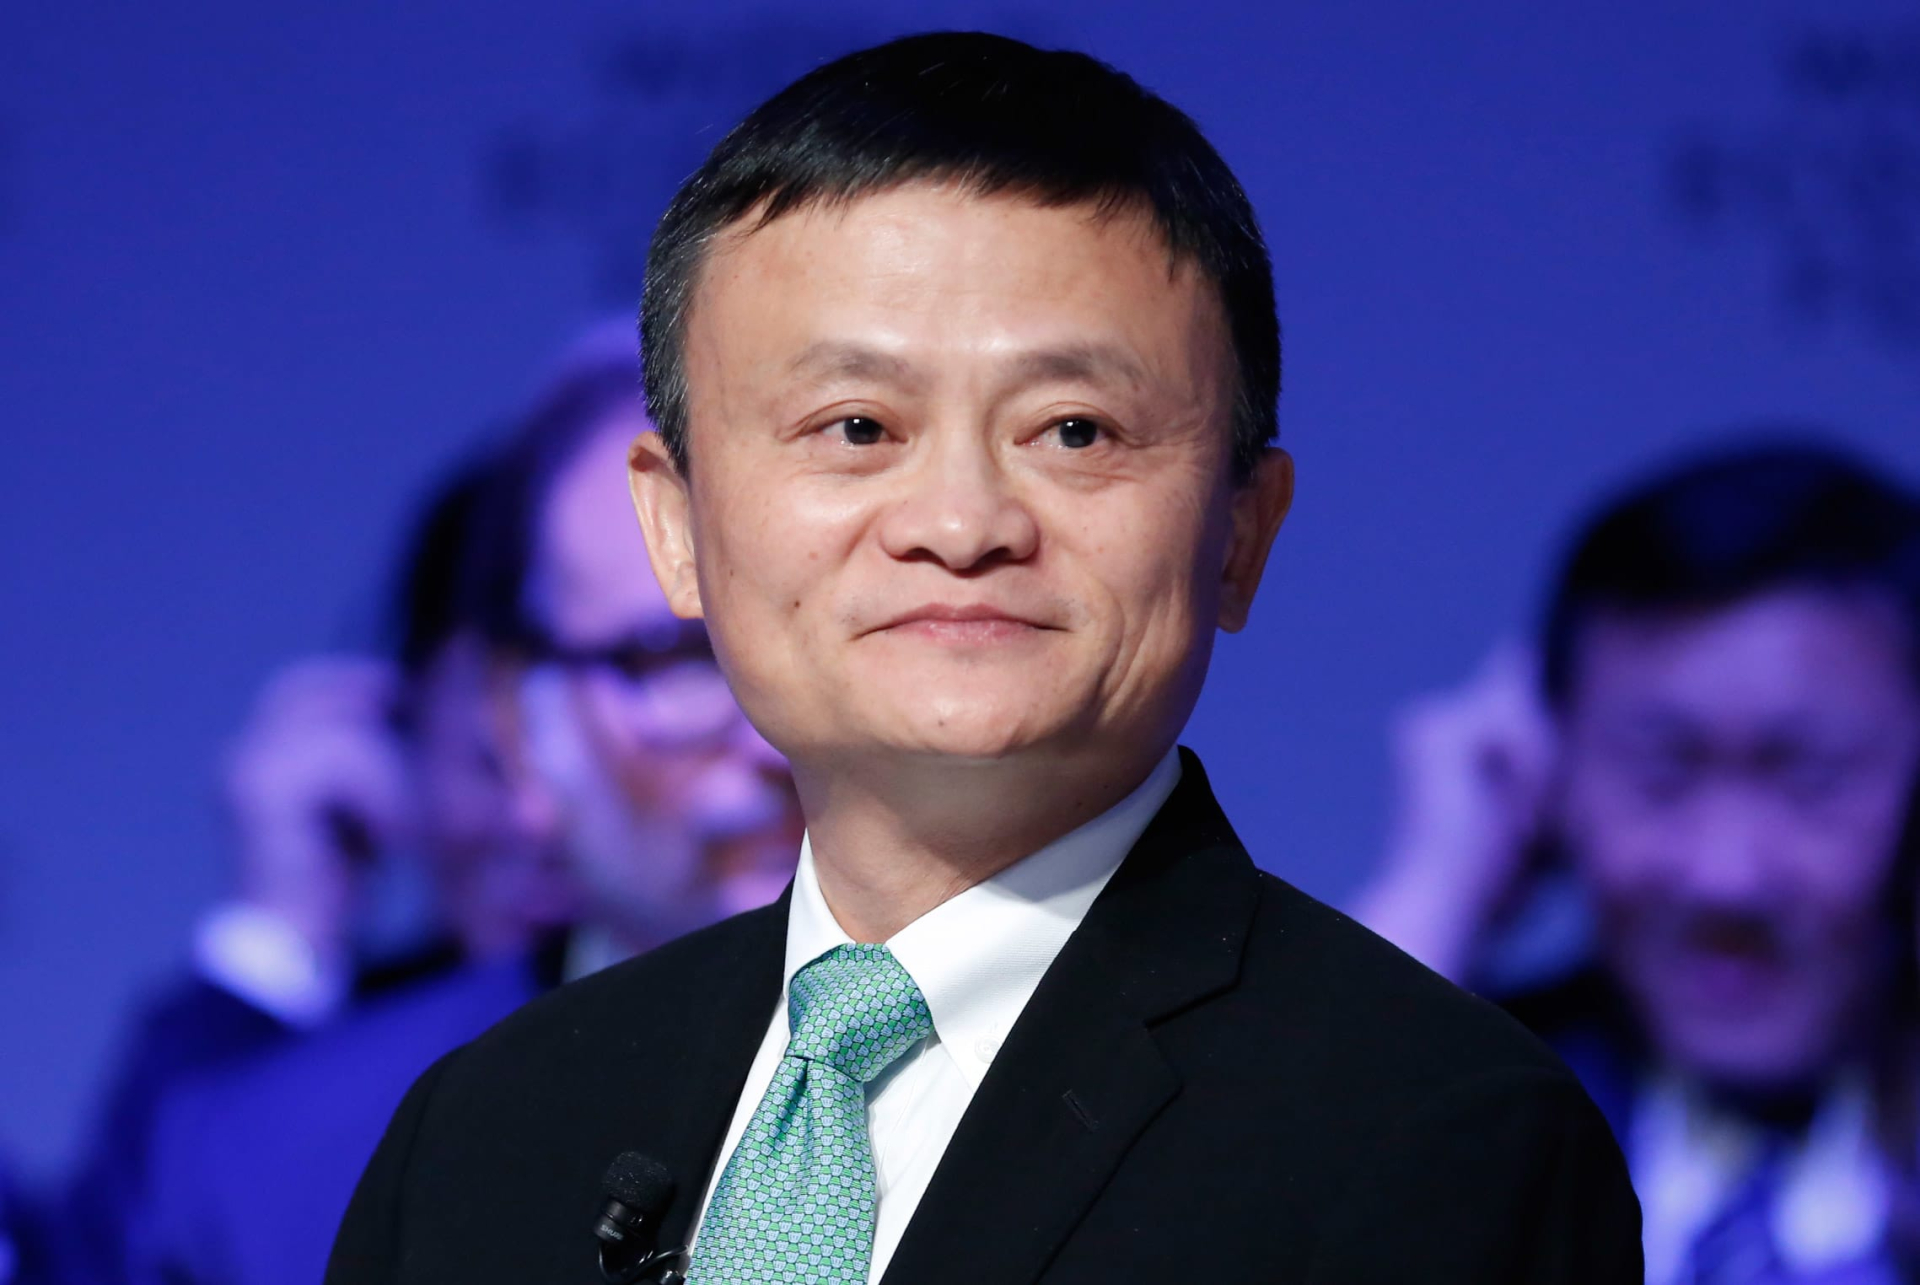 Giữa bão sa thải, chuyện Jack Ma từng bật khóc khi thông báo cắt giảm nhân sự công ty con khiến nhiều người suy ngẫm - ảnh 3